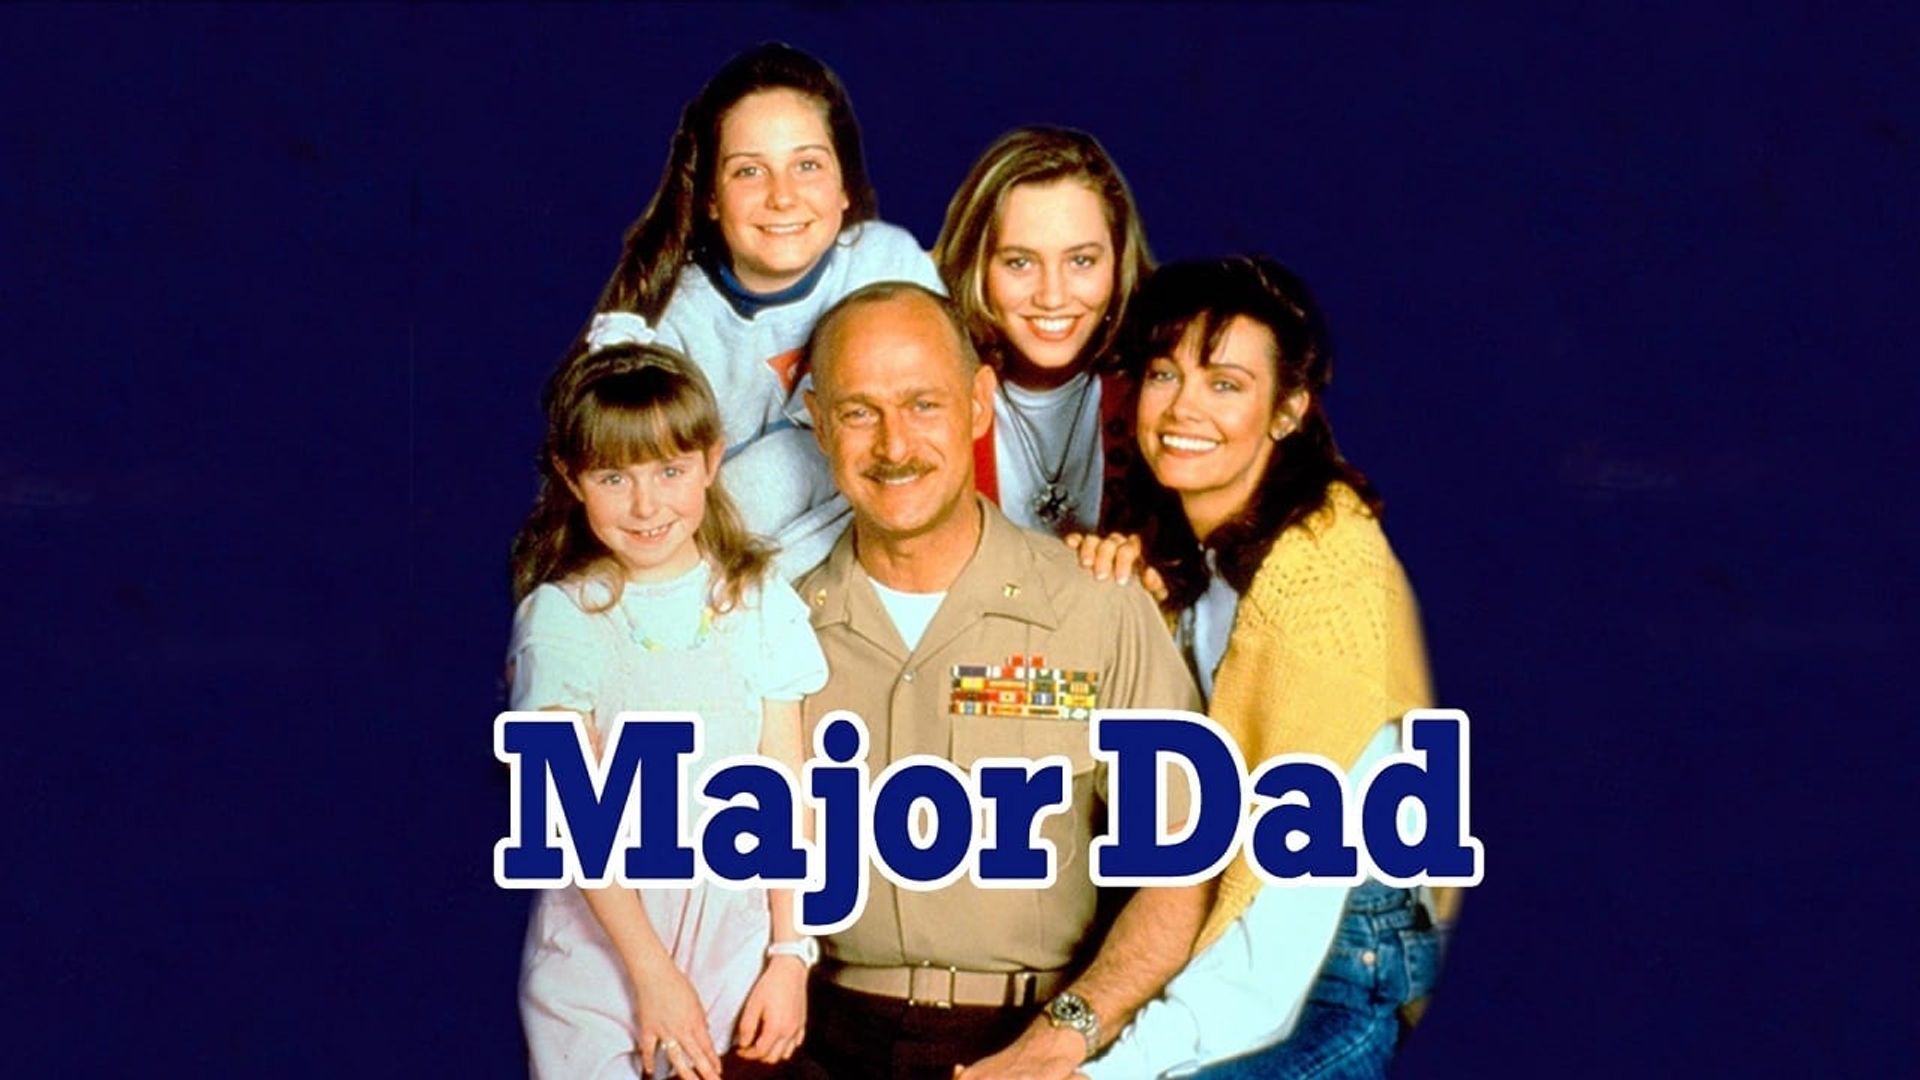 Major Dad background